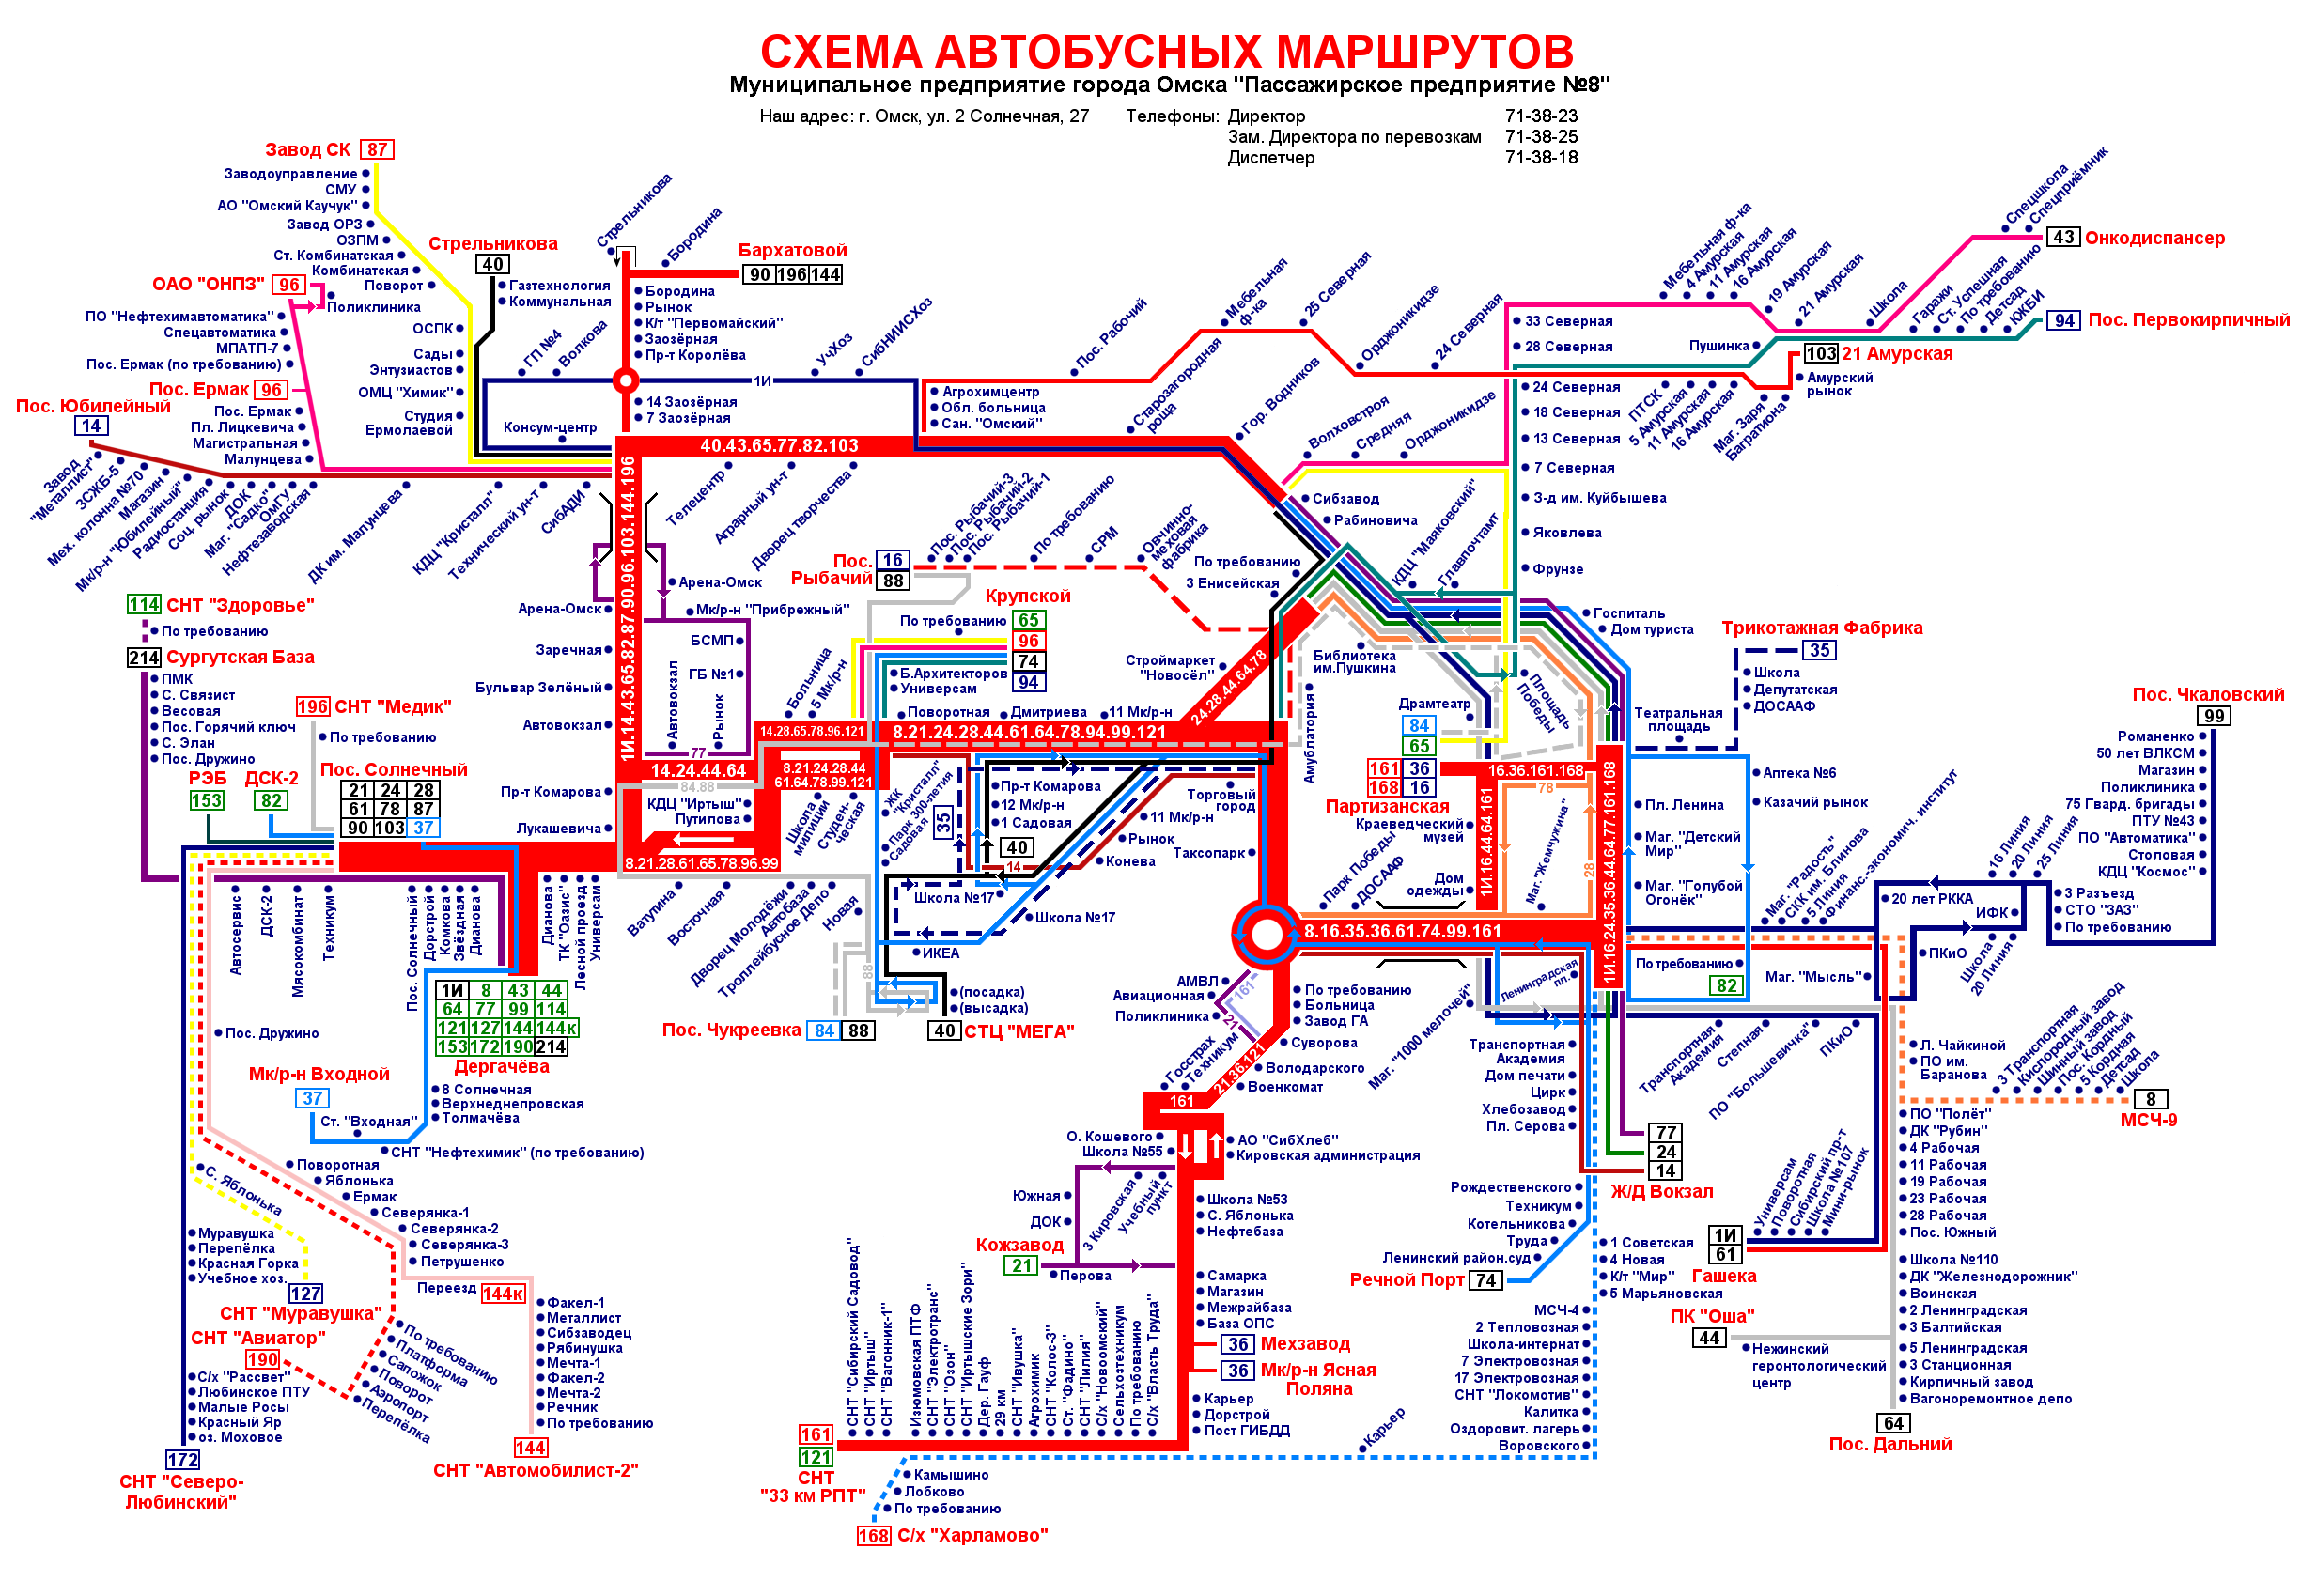 Omsk — Maps